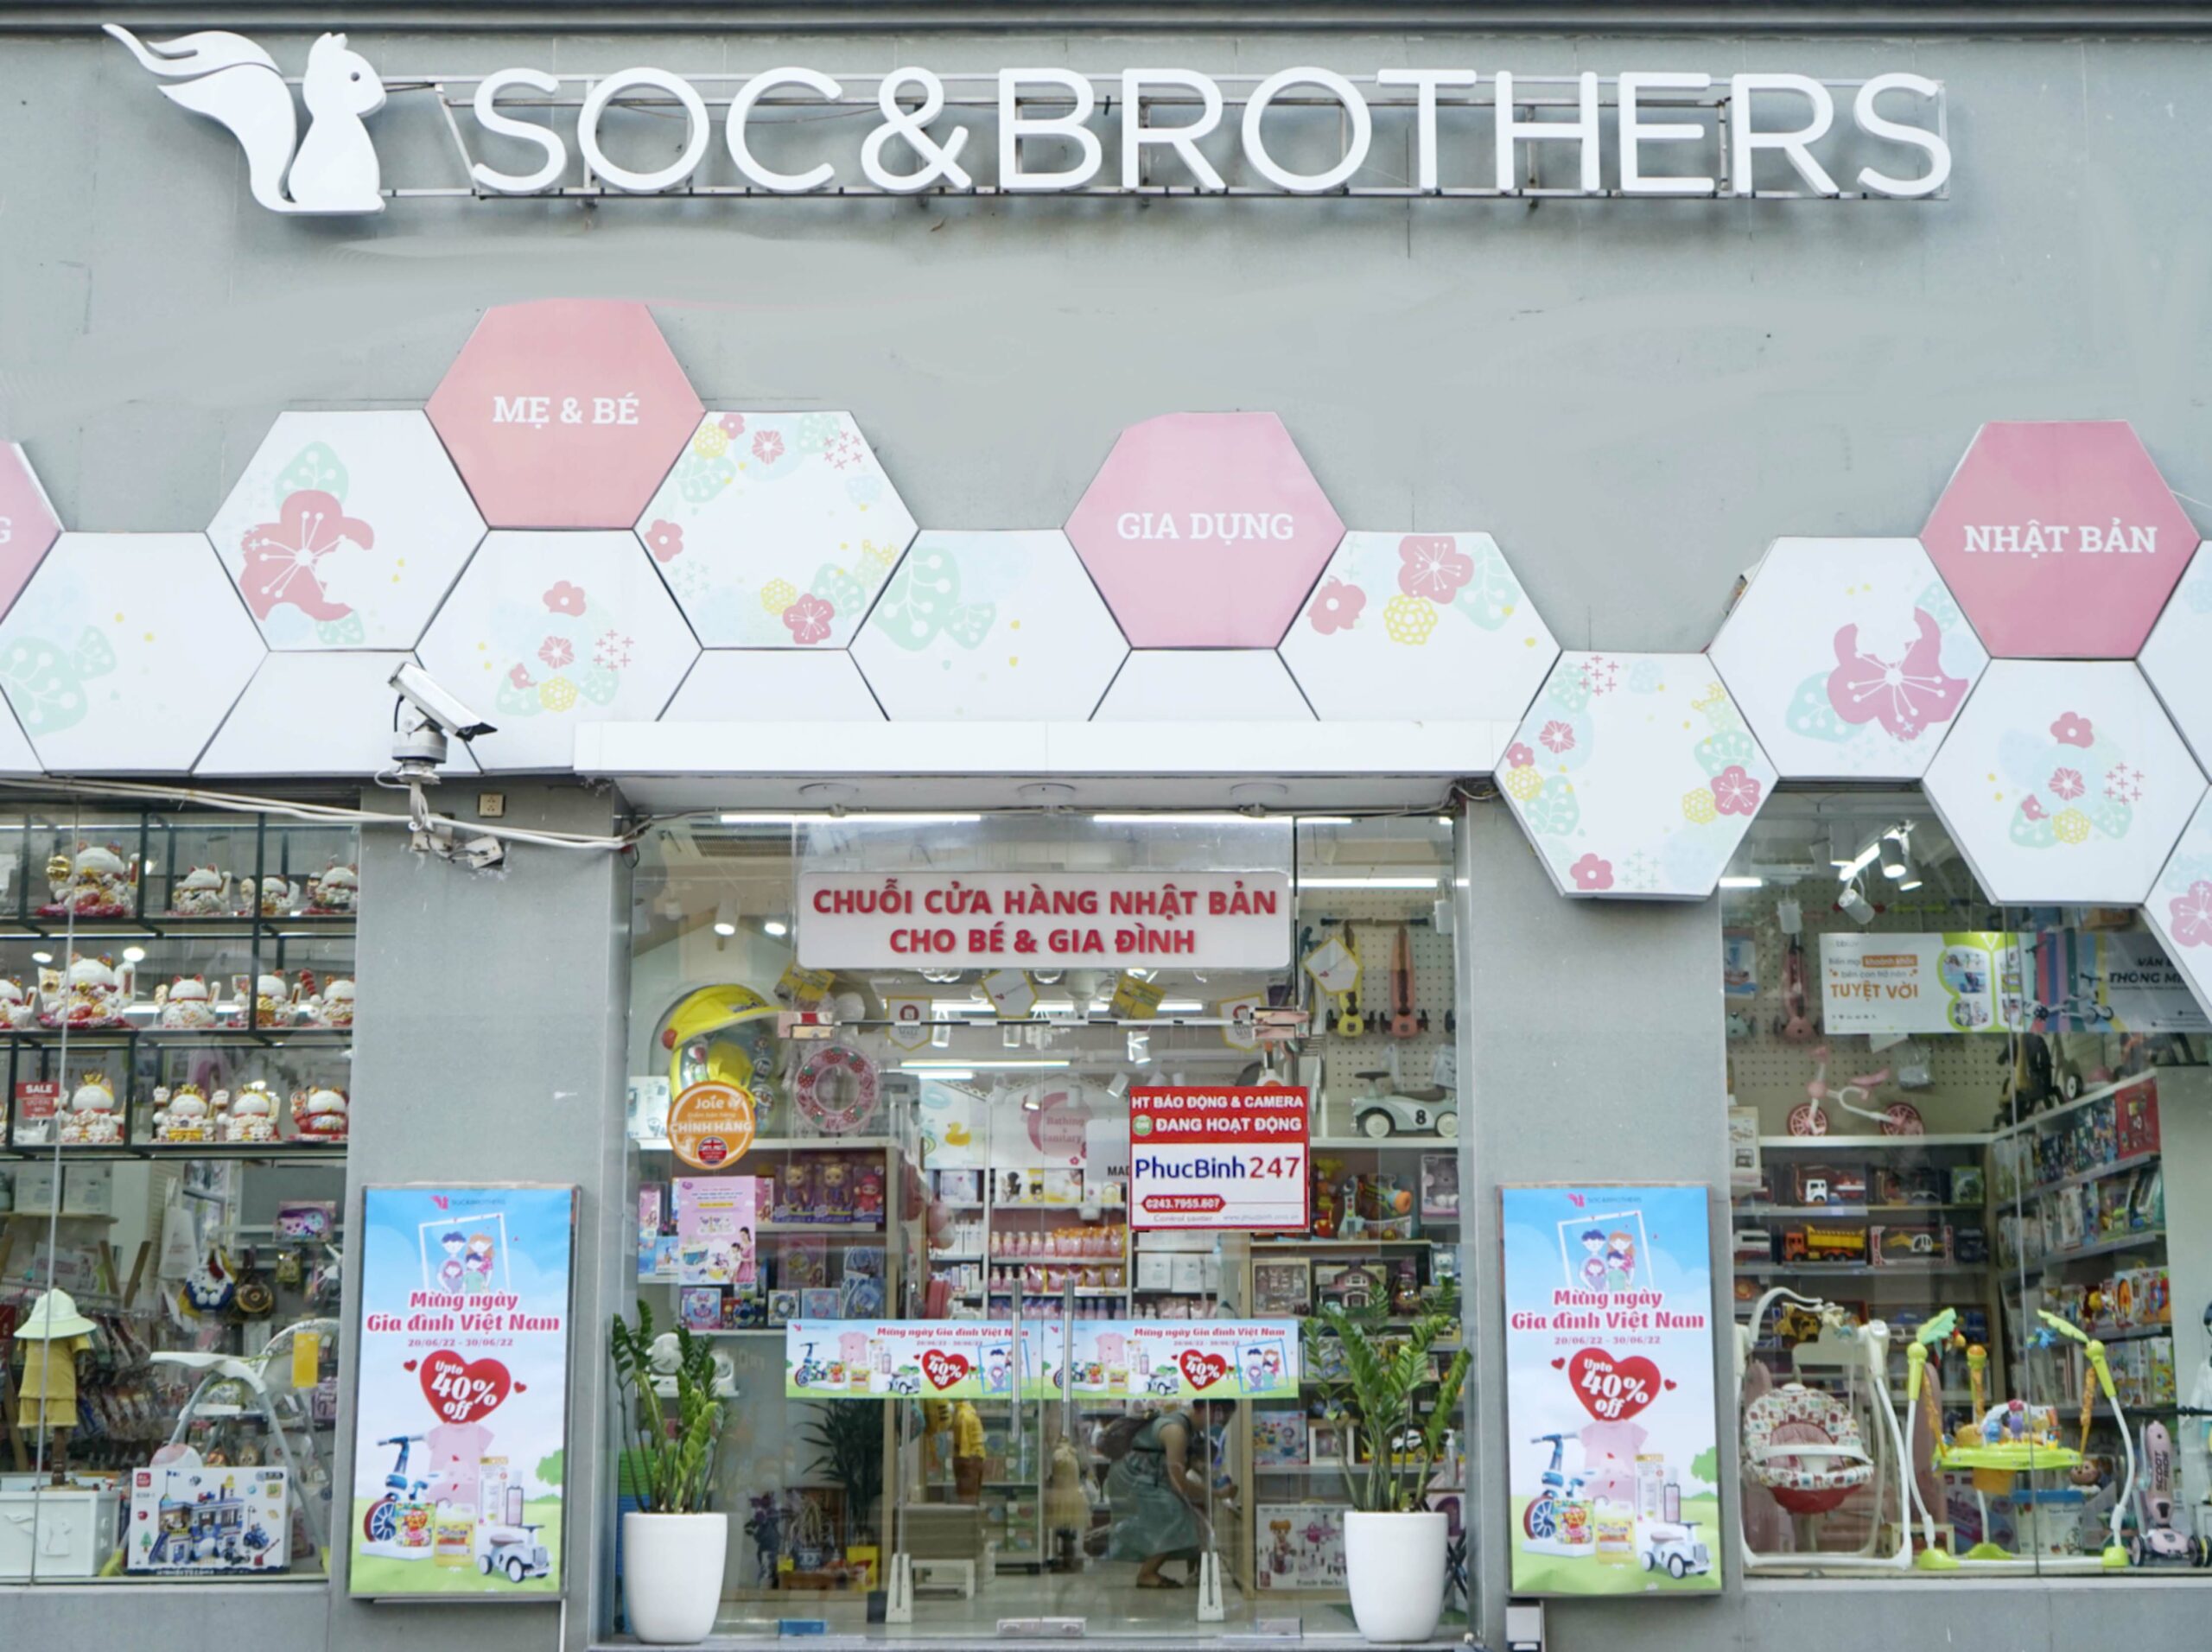 Chuỗi cửa hàng Soc & Brother